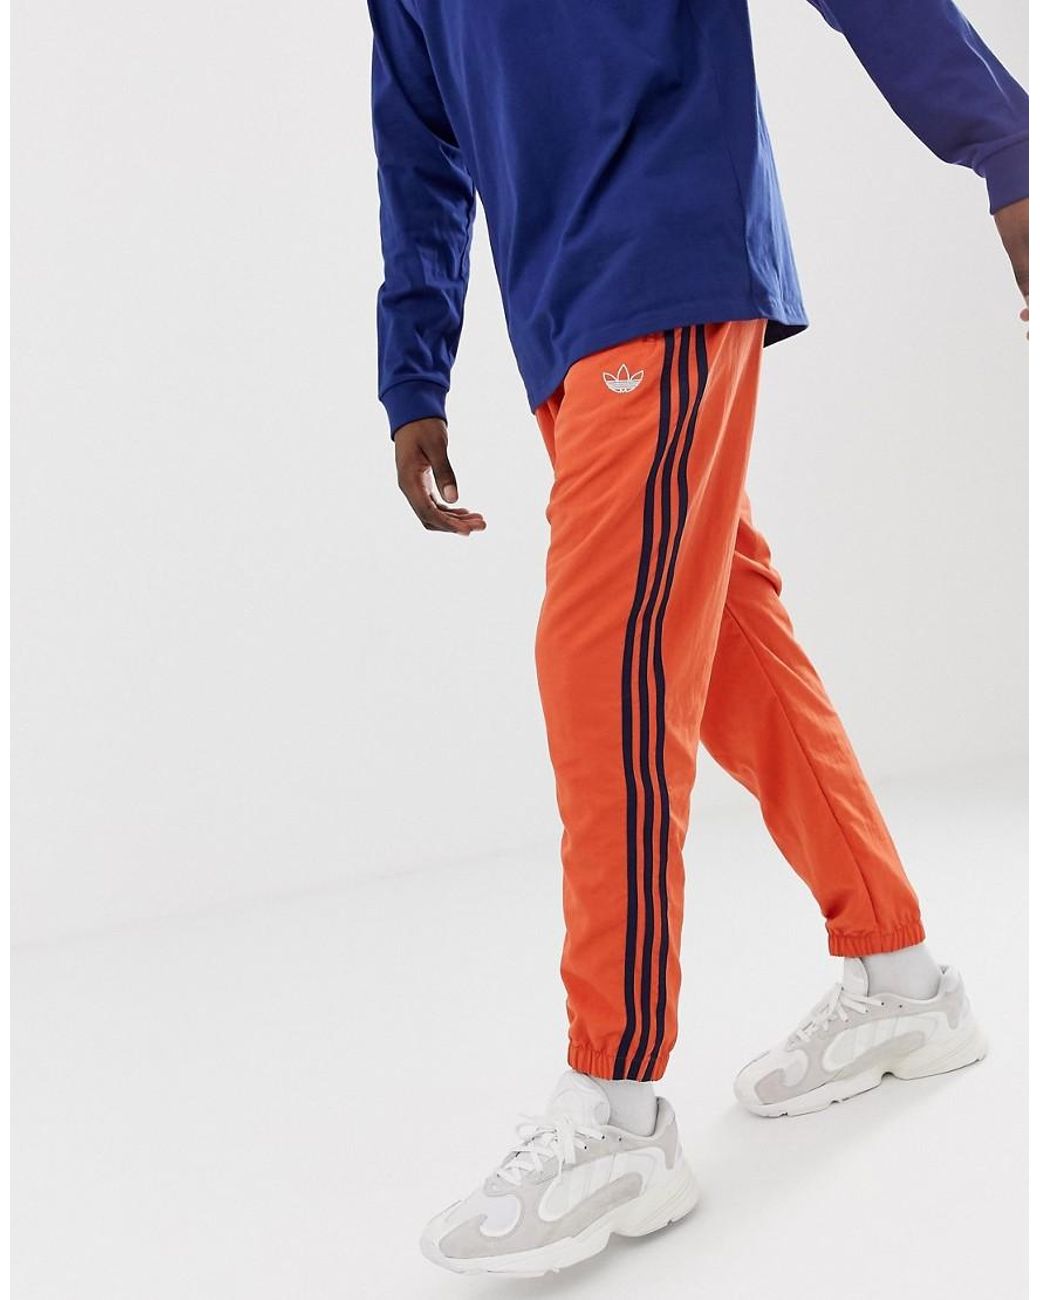 profundidad mermelada Estadísticas Joggers naranjas con 3 rayas y diseño tejido adidas Originals de hombre de  color Naranja | Lyst